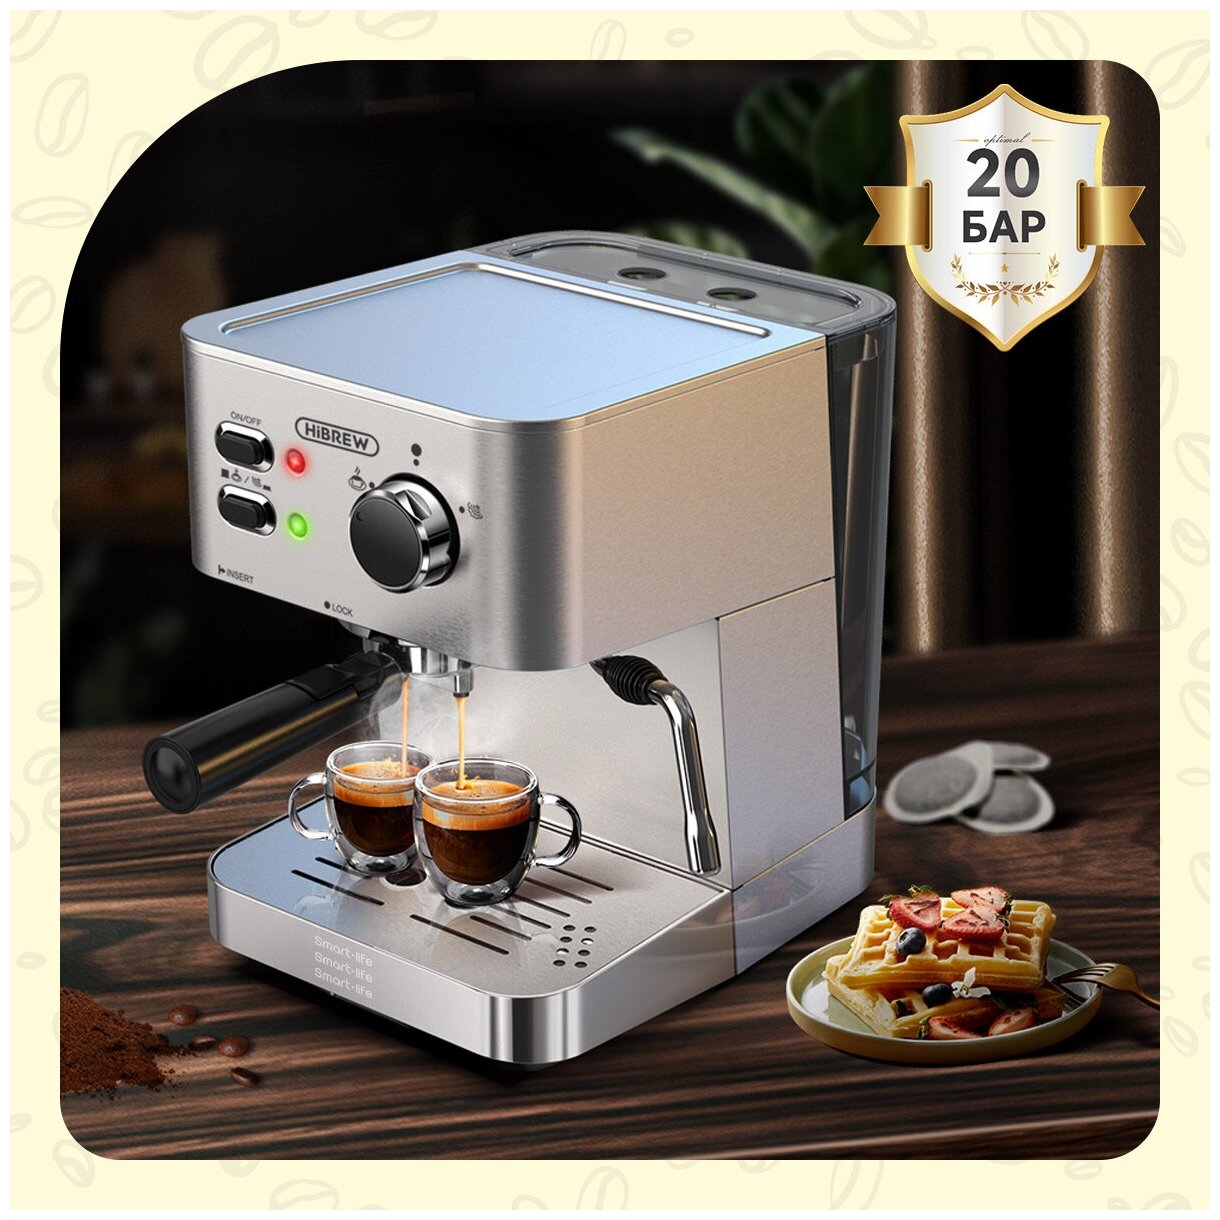 Кофе-машина для эспрессо HiBREW H10(ЕАС-сертификат) 20 бар Полуавтоматическая кофеварка из нержавеющей стали для приготовления эспрессо капучино